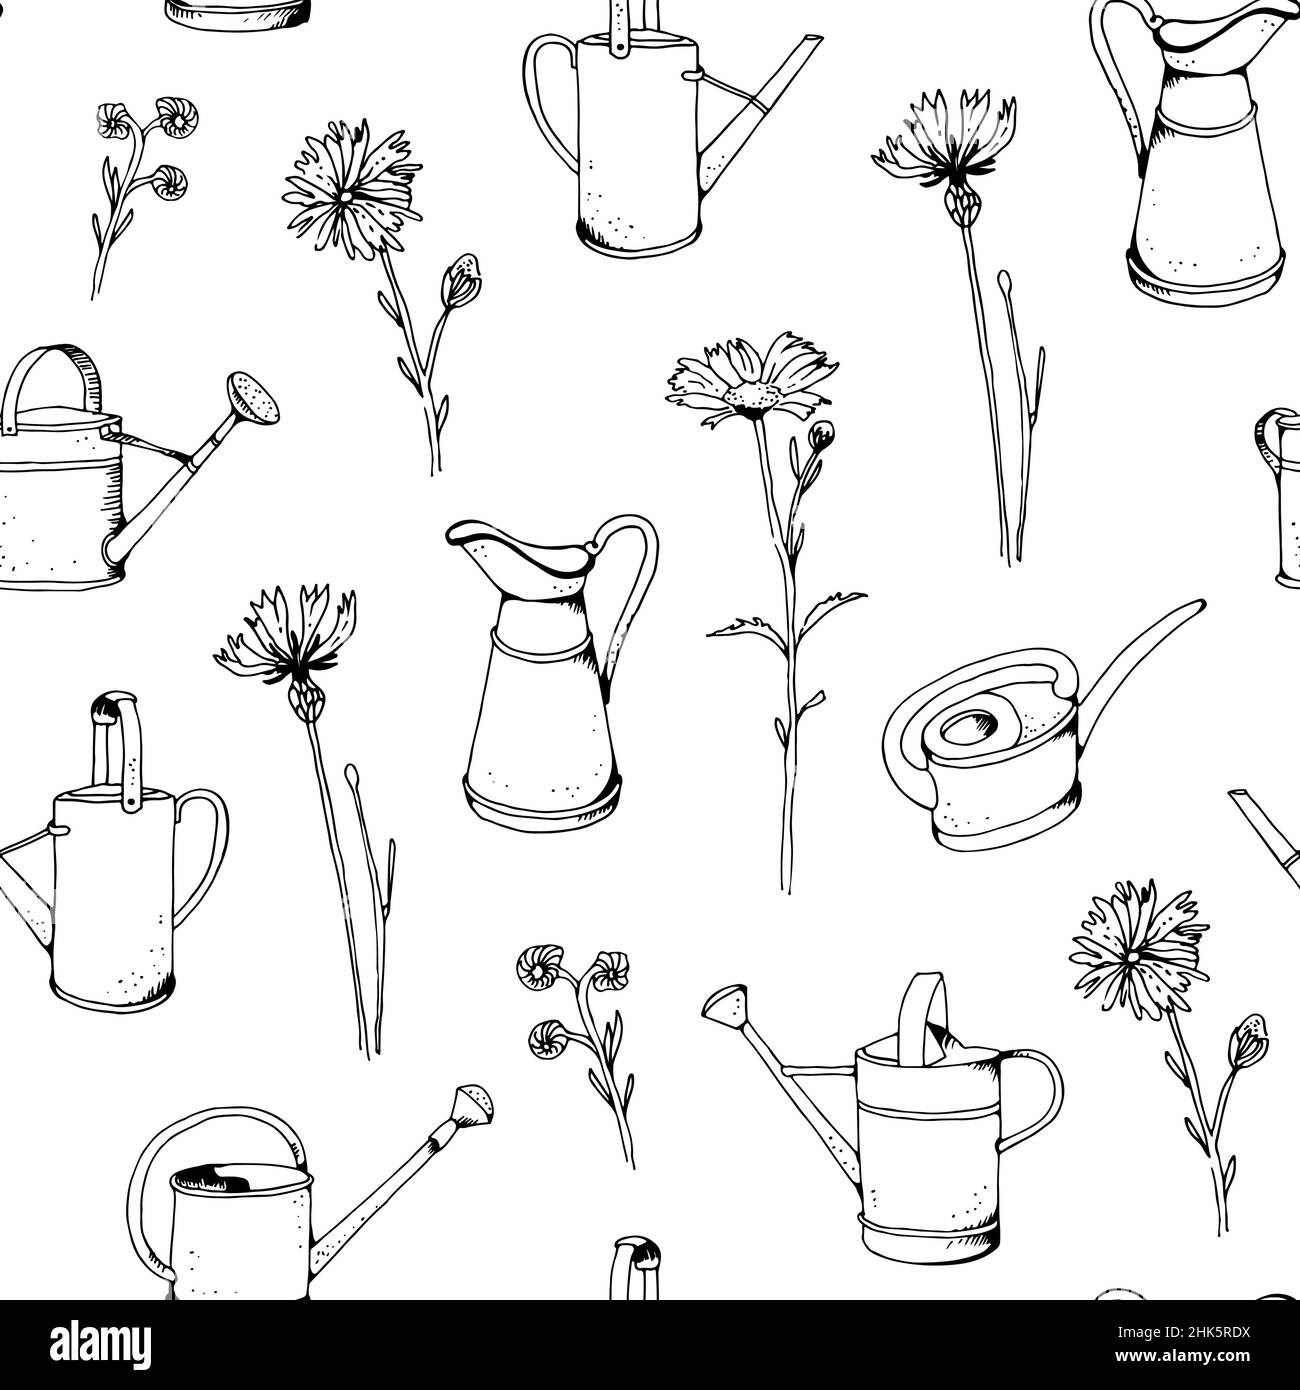 Gartenbewässerung kann Vektor nahtlose Muster, handgezeichnete Skizze Frühling Hintergrund Stock Vektor